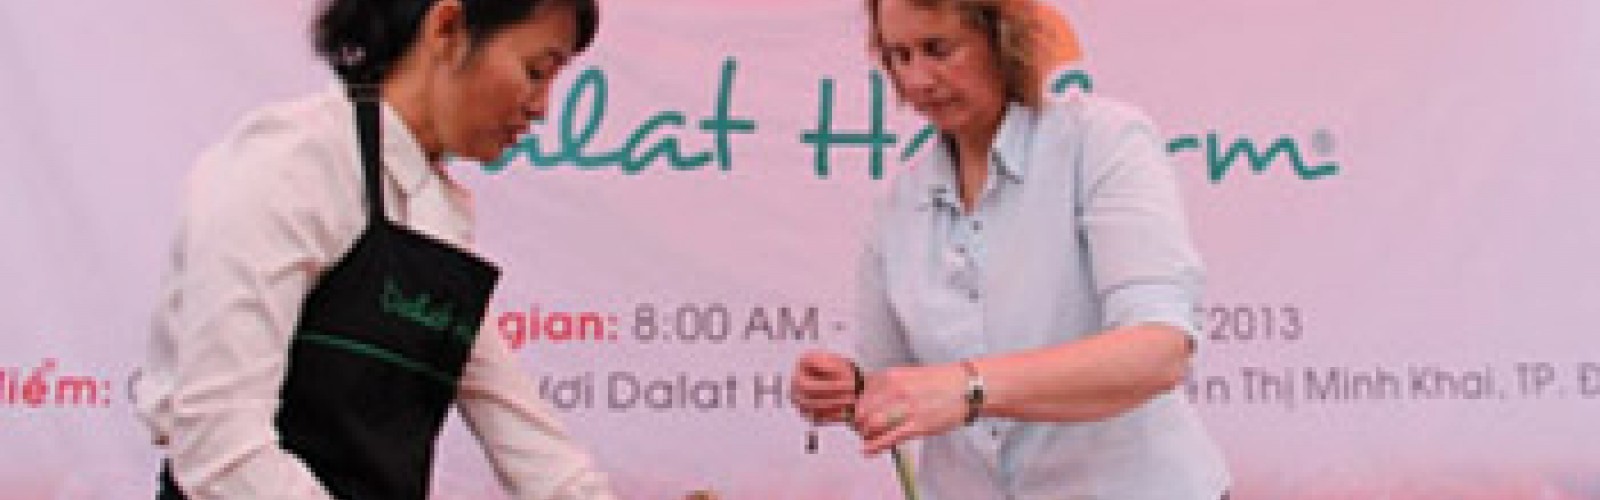 Dalat Hasfarm organized Flower Workshop